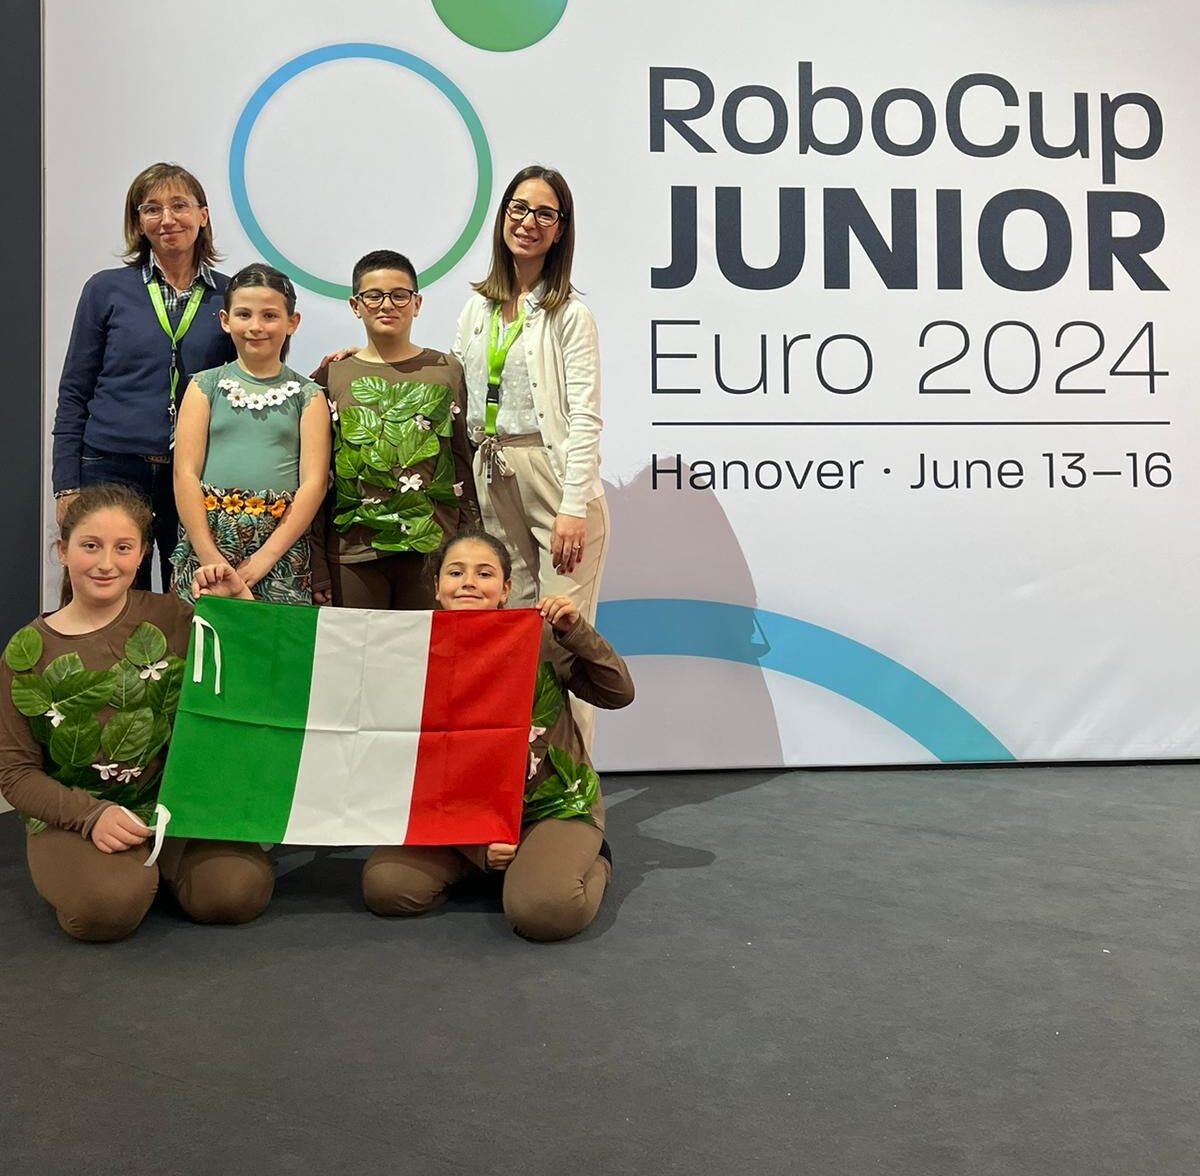 Campionato europeo di robotica